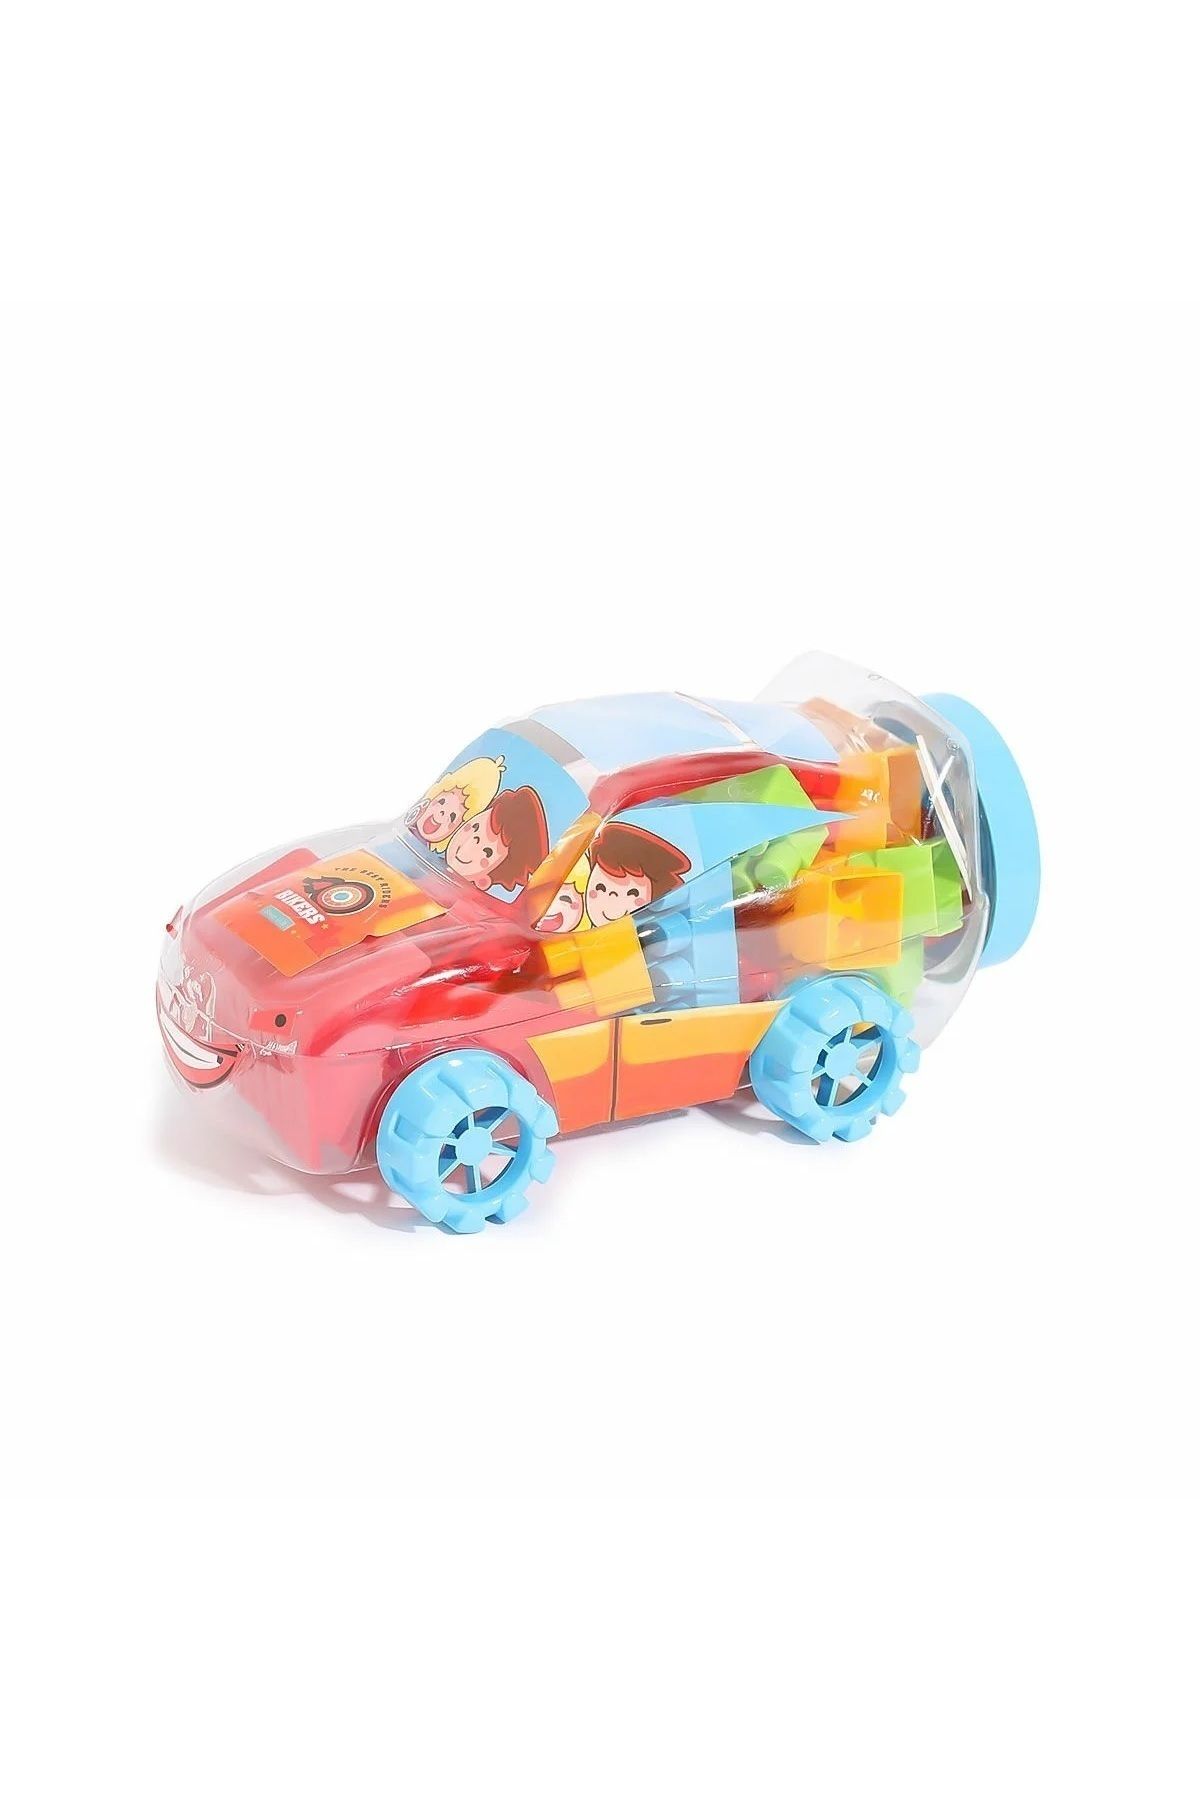 Dandini Çocuk Eğitici ve Eğlenceli Renkli Arabalar Bloklar Oyun Seti